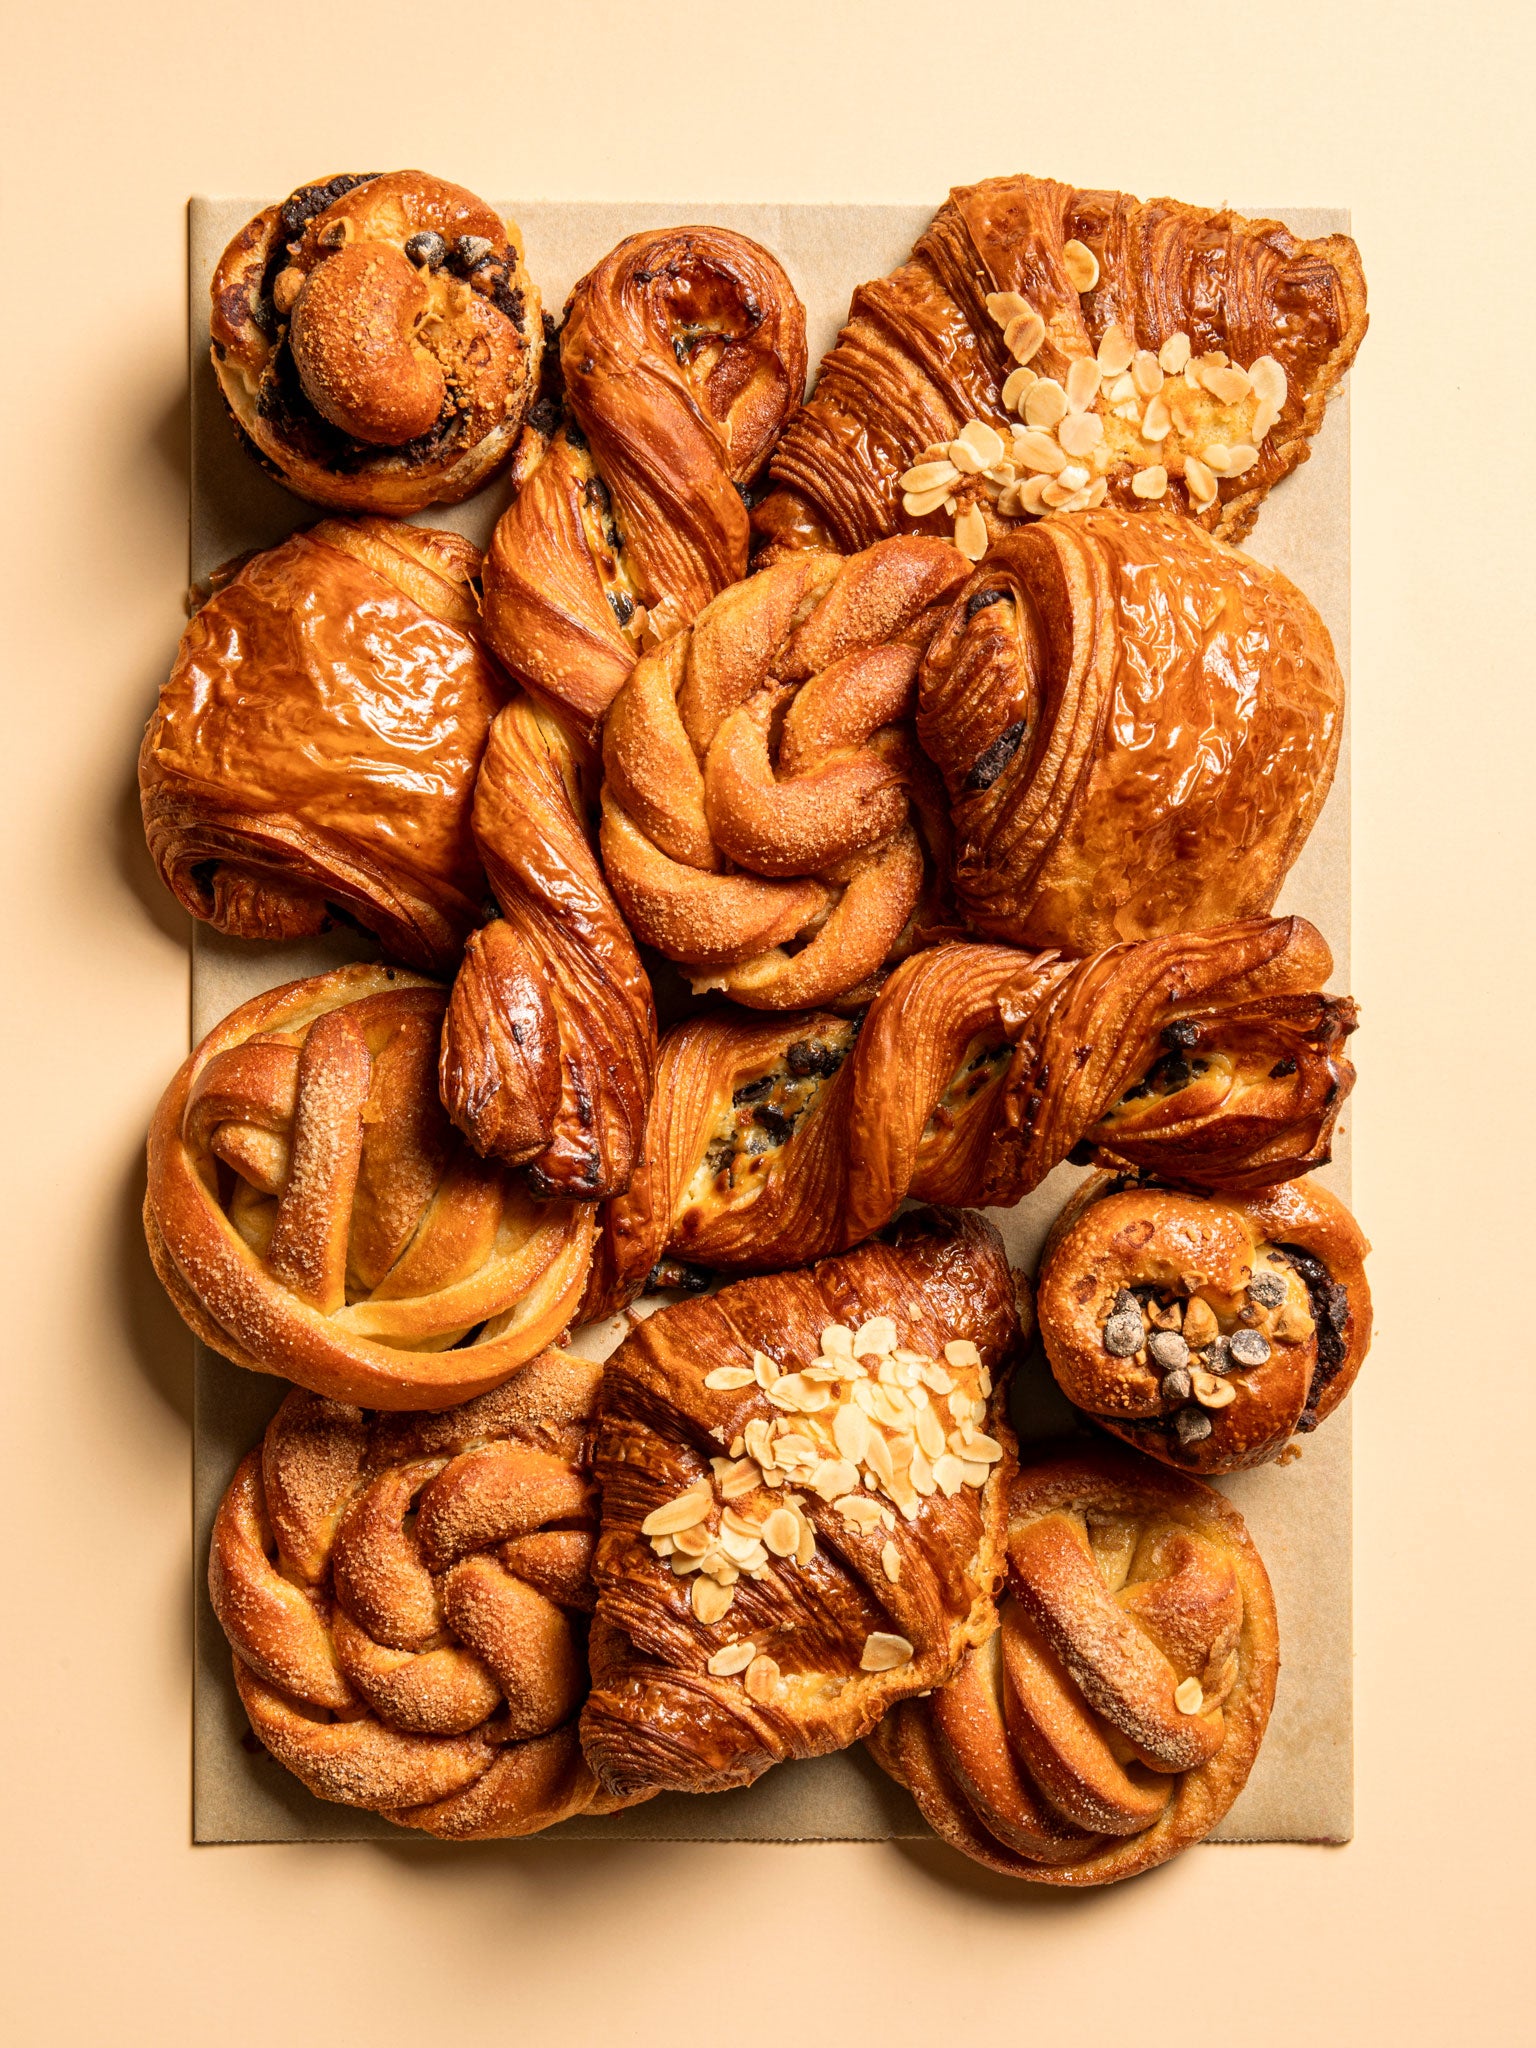 Pastry Platte von Feasts of Eden mit 12 frischgebackenen Pasty Teilchen